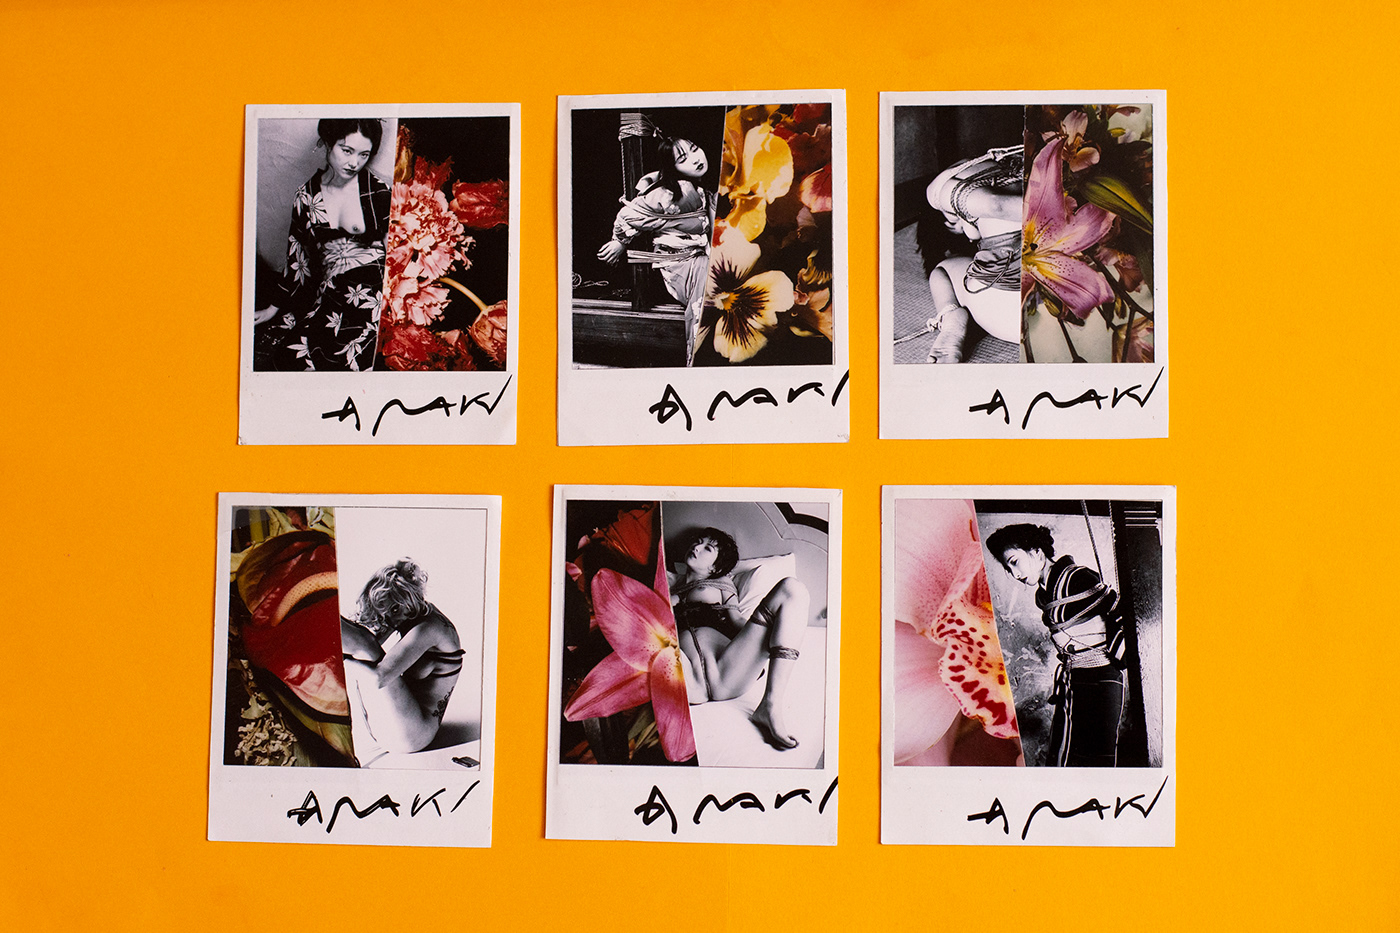 Araki artist biography book editorial eroticism japan Photography 